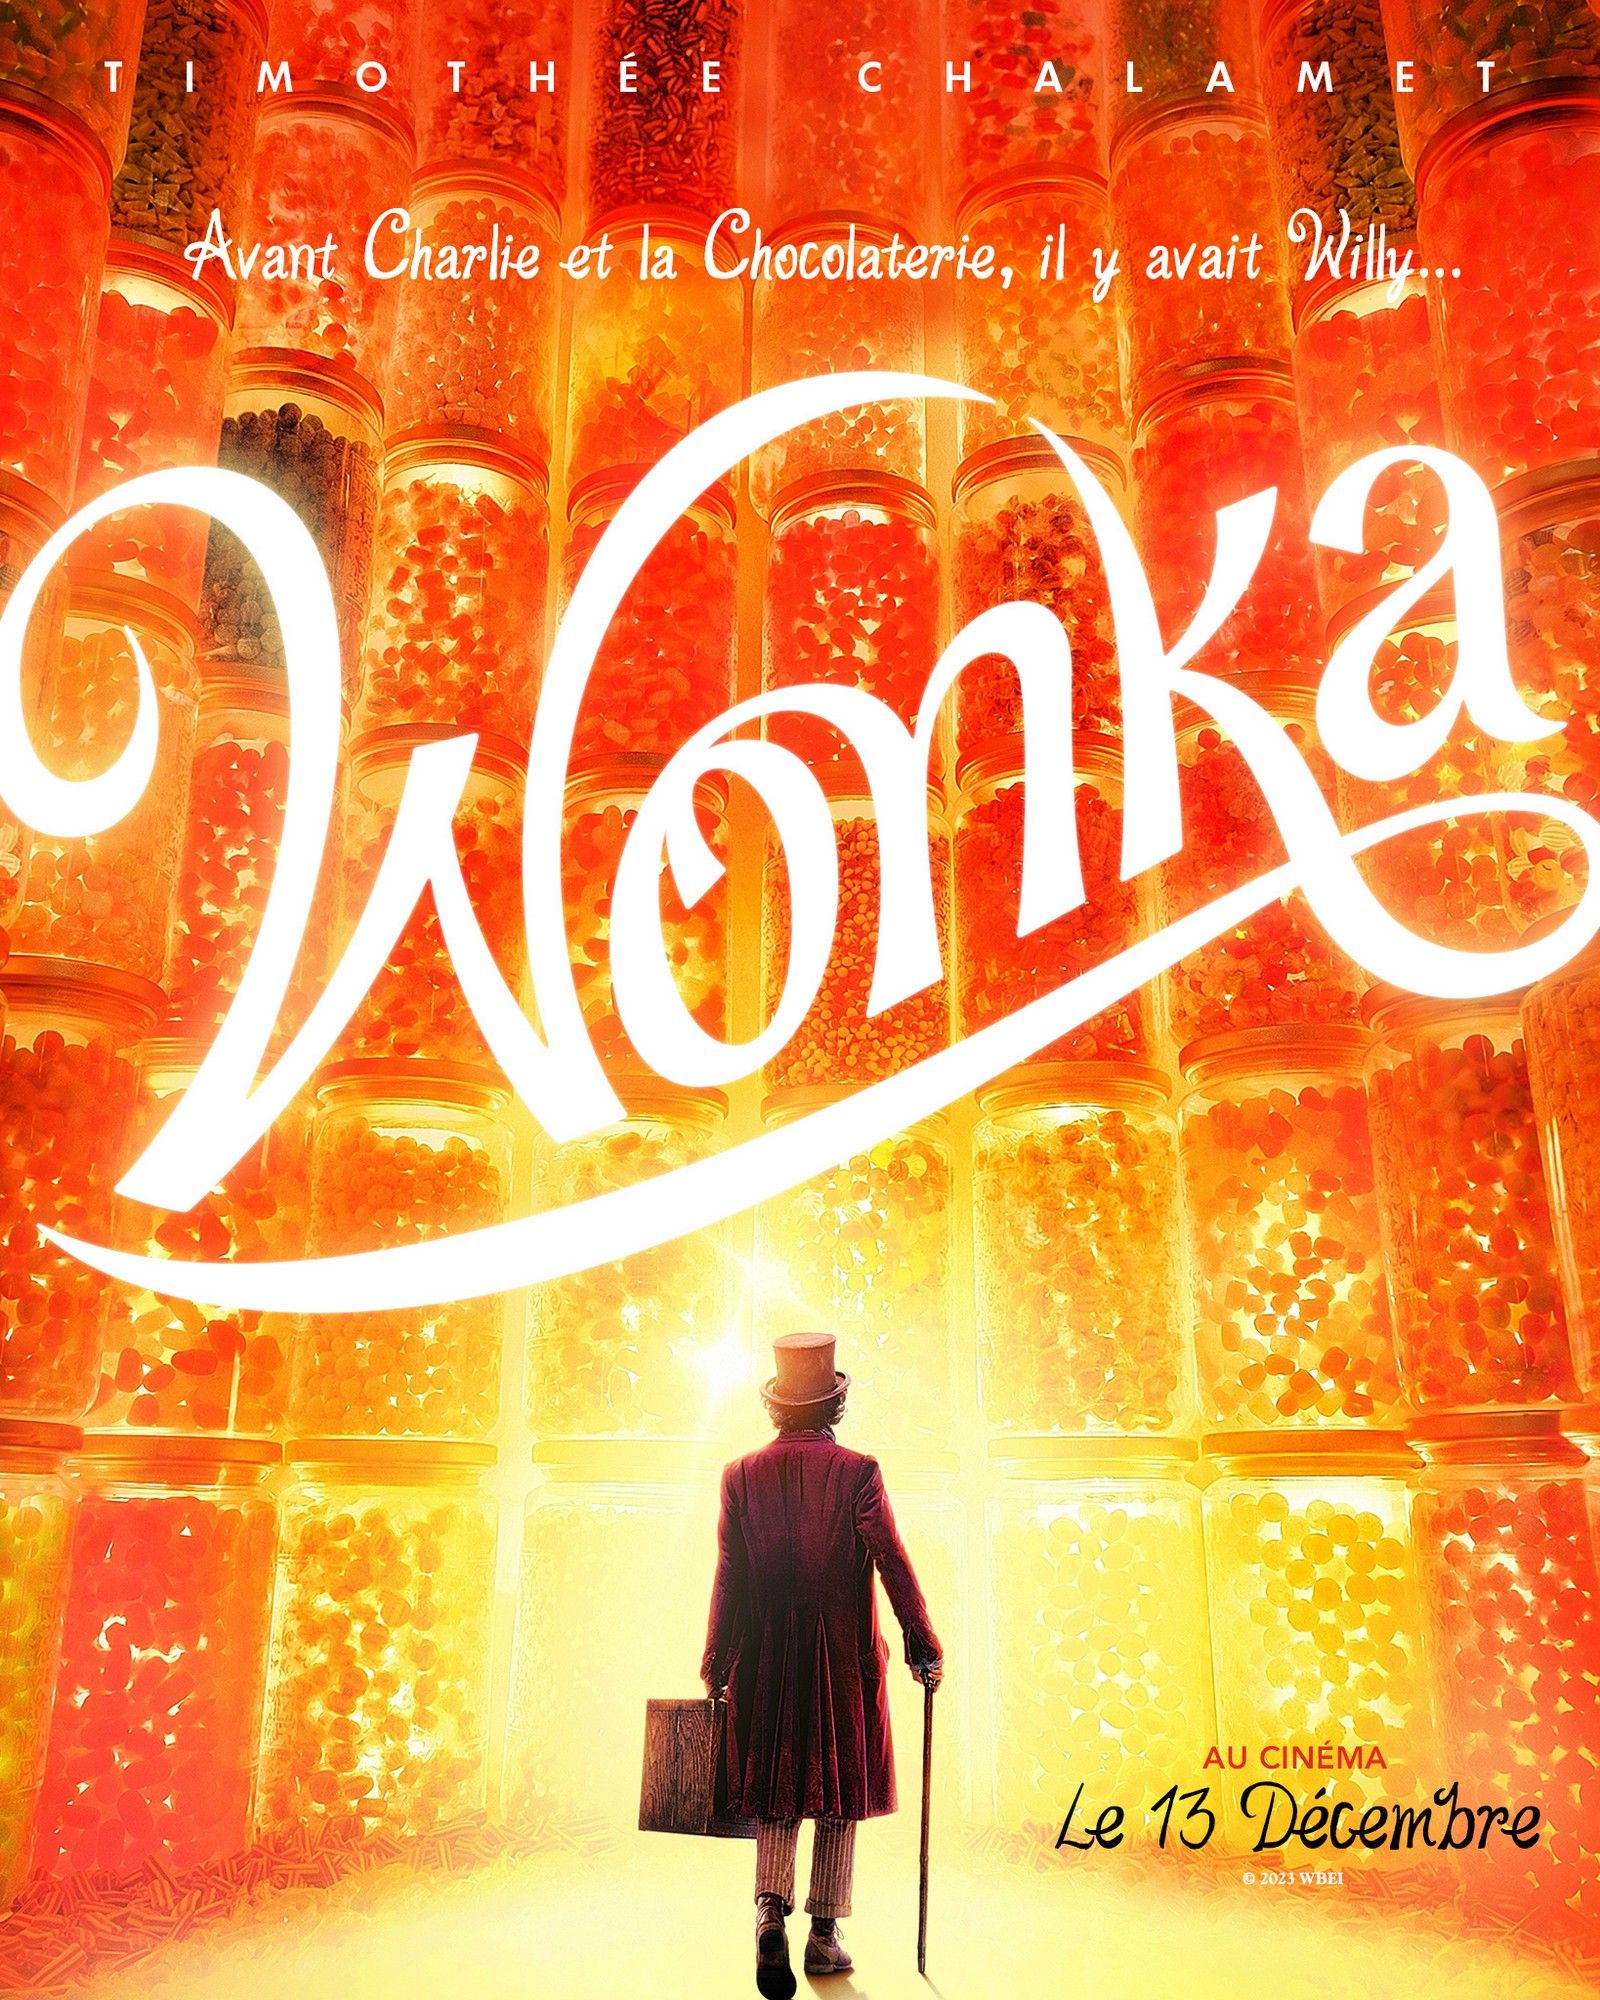 Cinéma : 3 choses qu'il faut savoir (ou pas) avant de voir Wonka